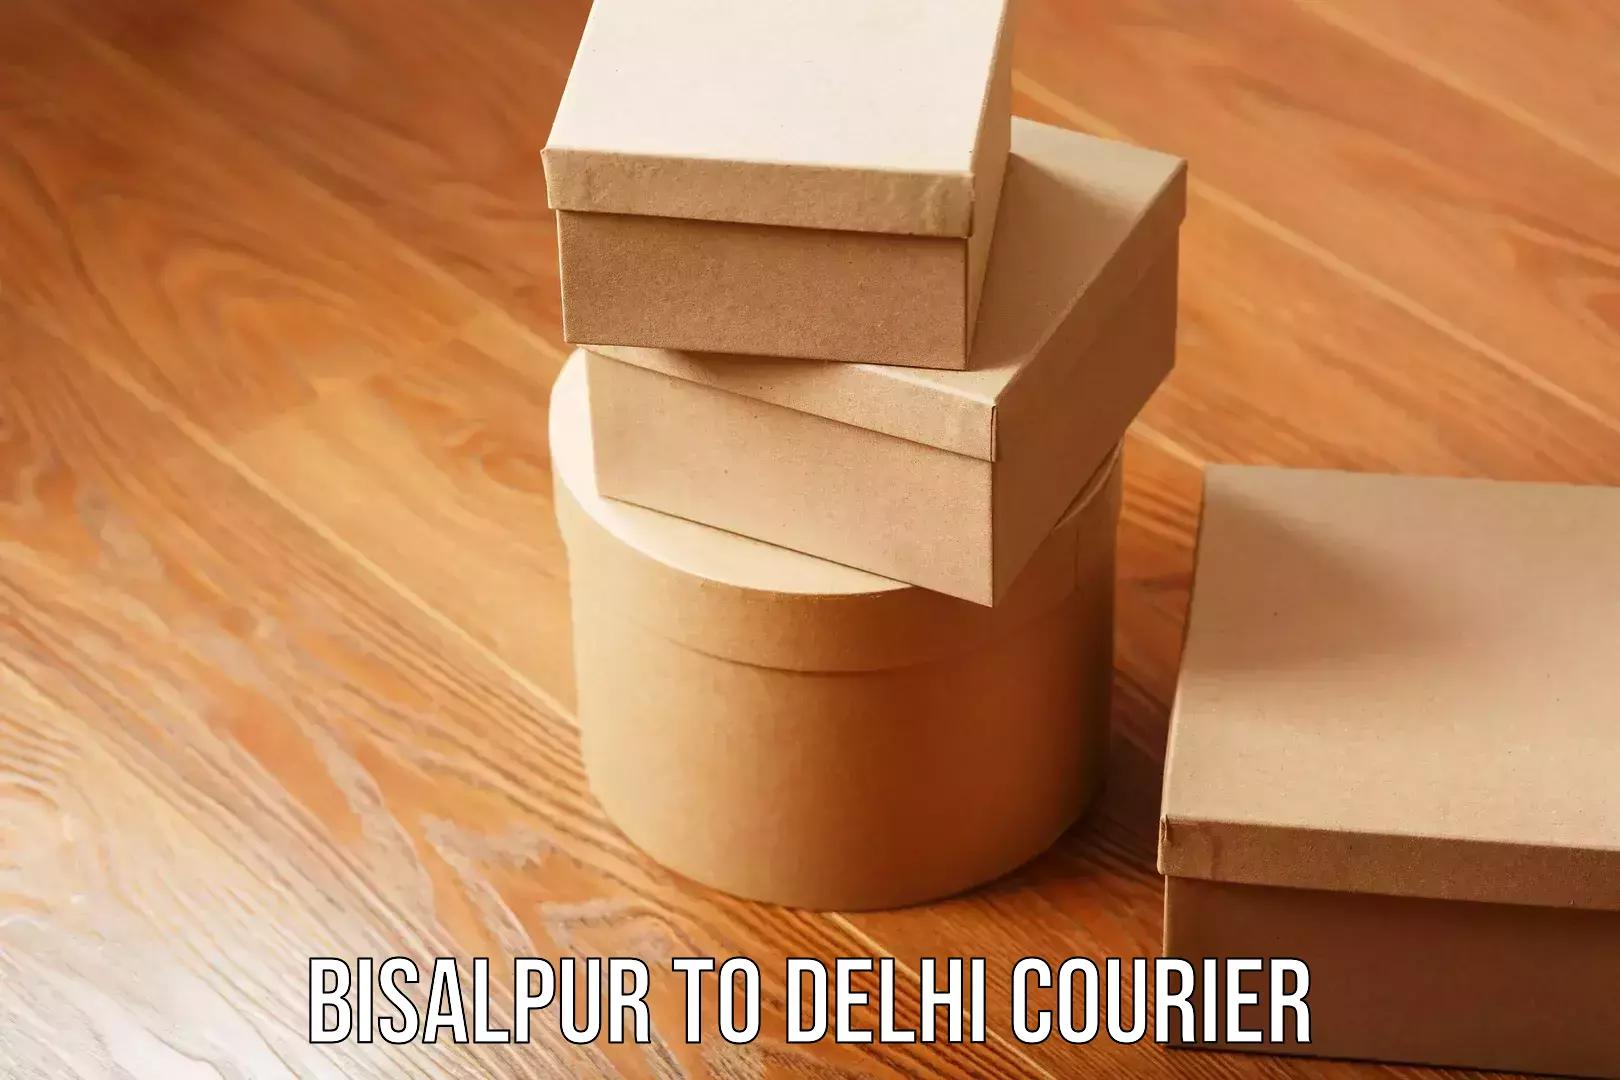 User-friendly courier app Bisalpur to Delhi